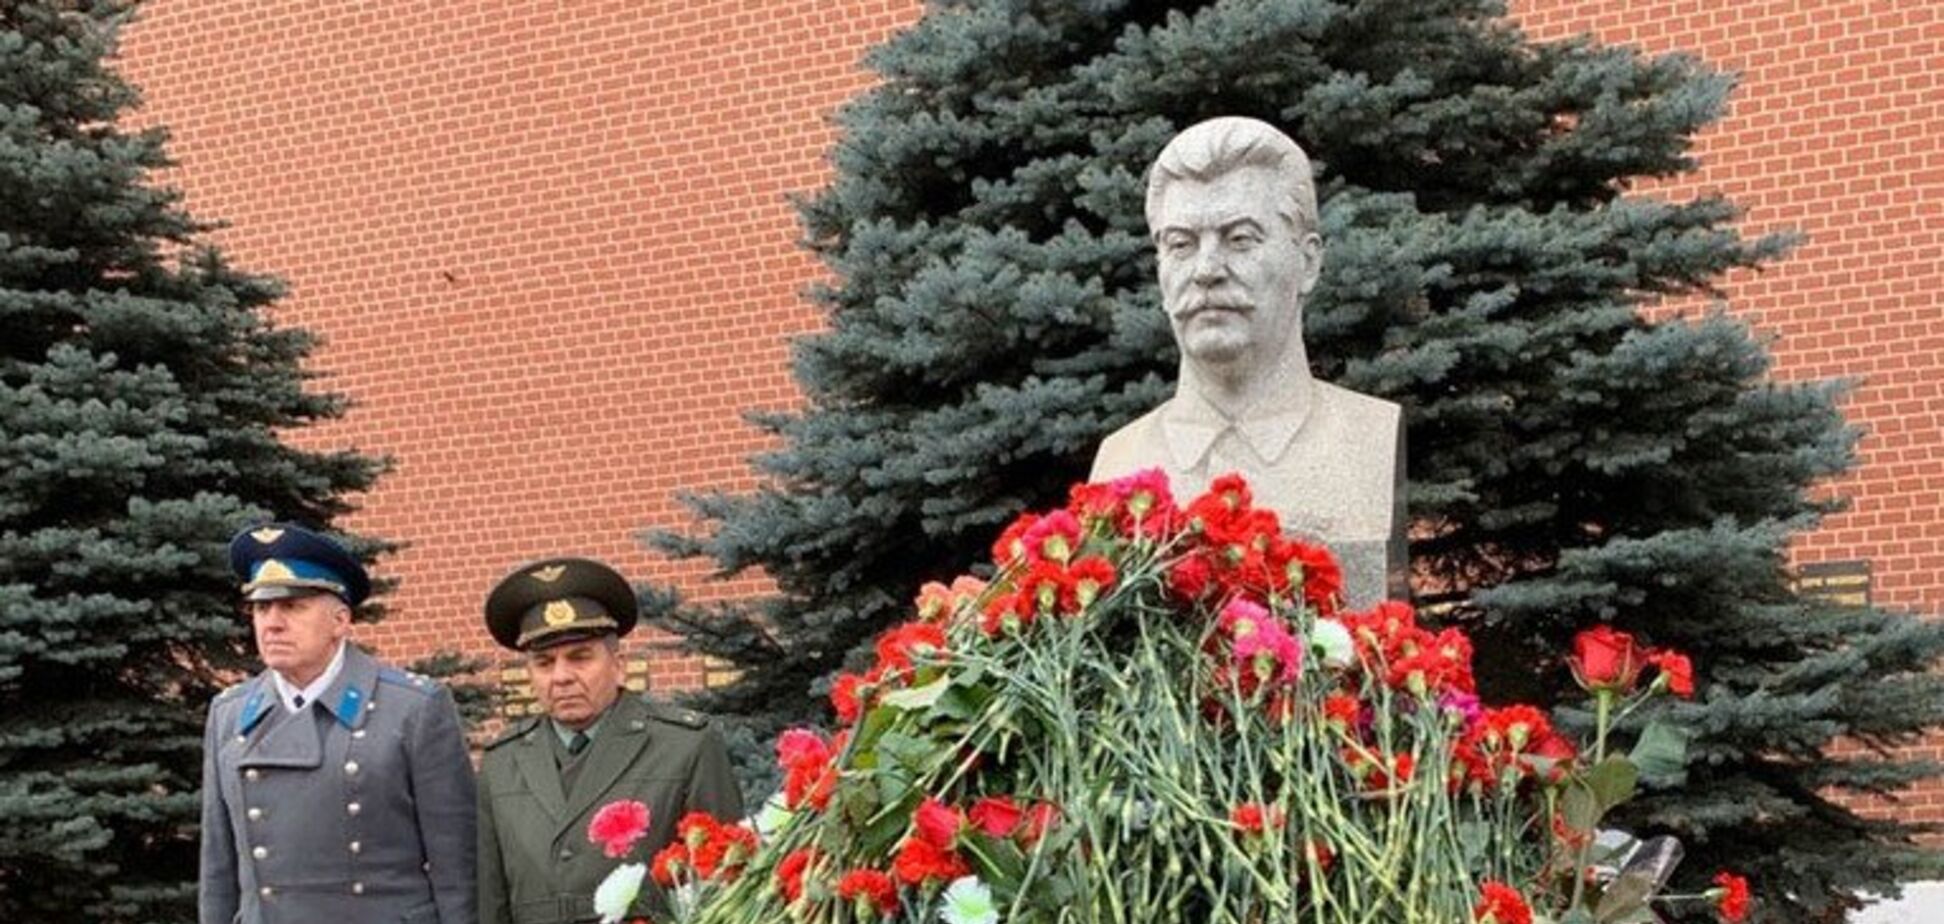 Мережу обурило поклоніння РФ вбивці-Сталіну